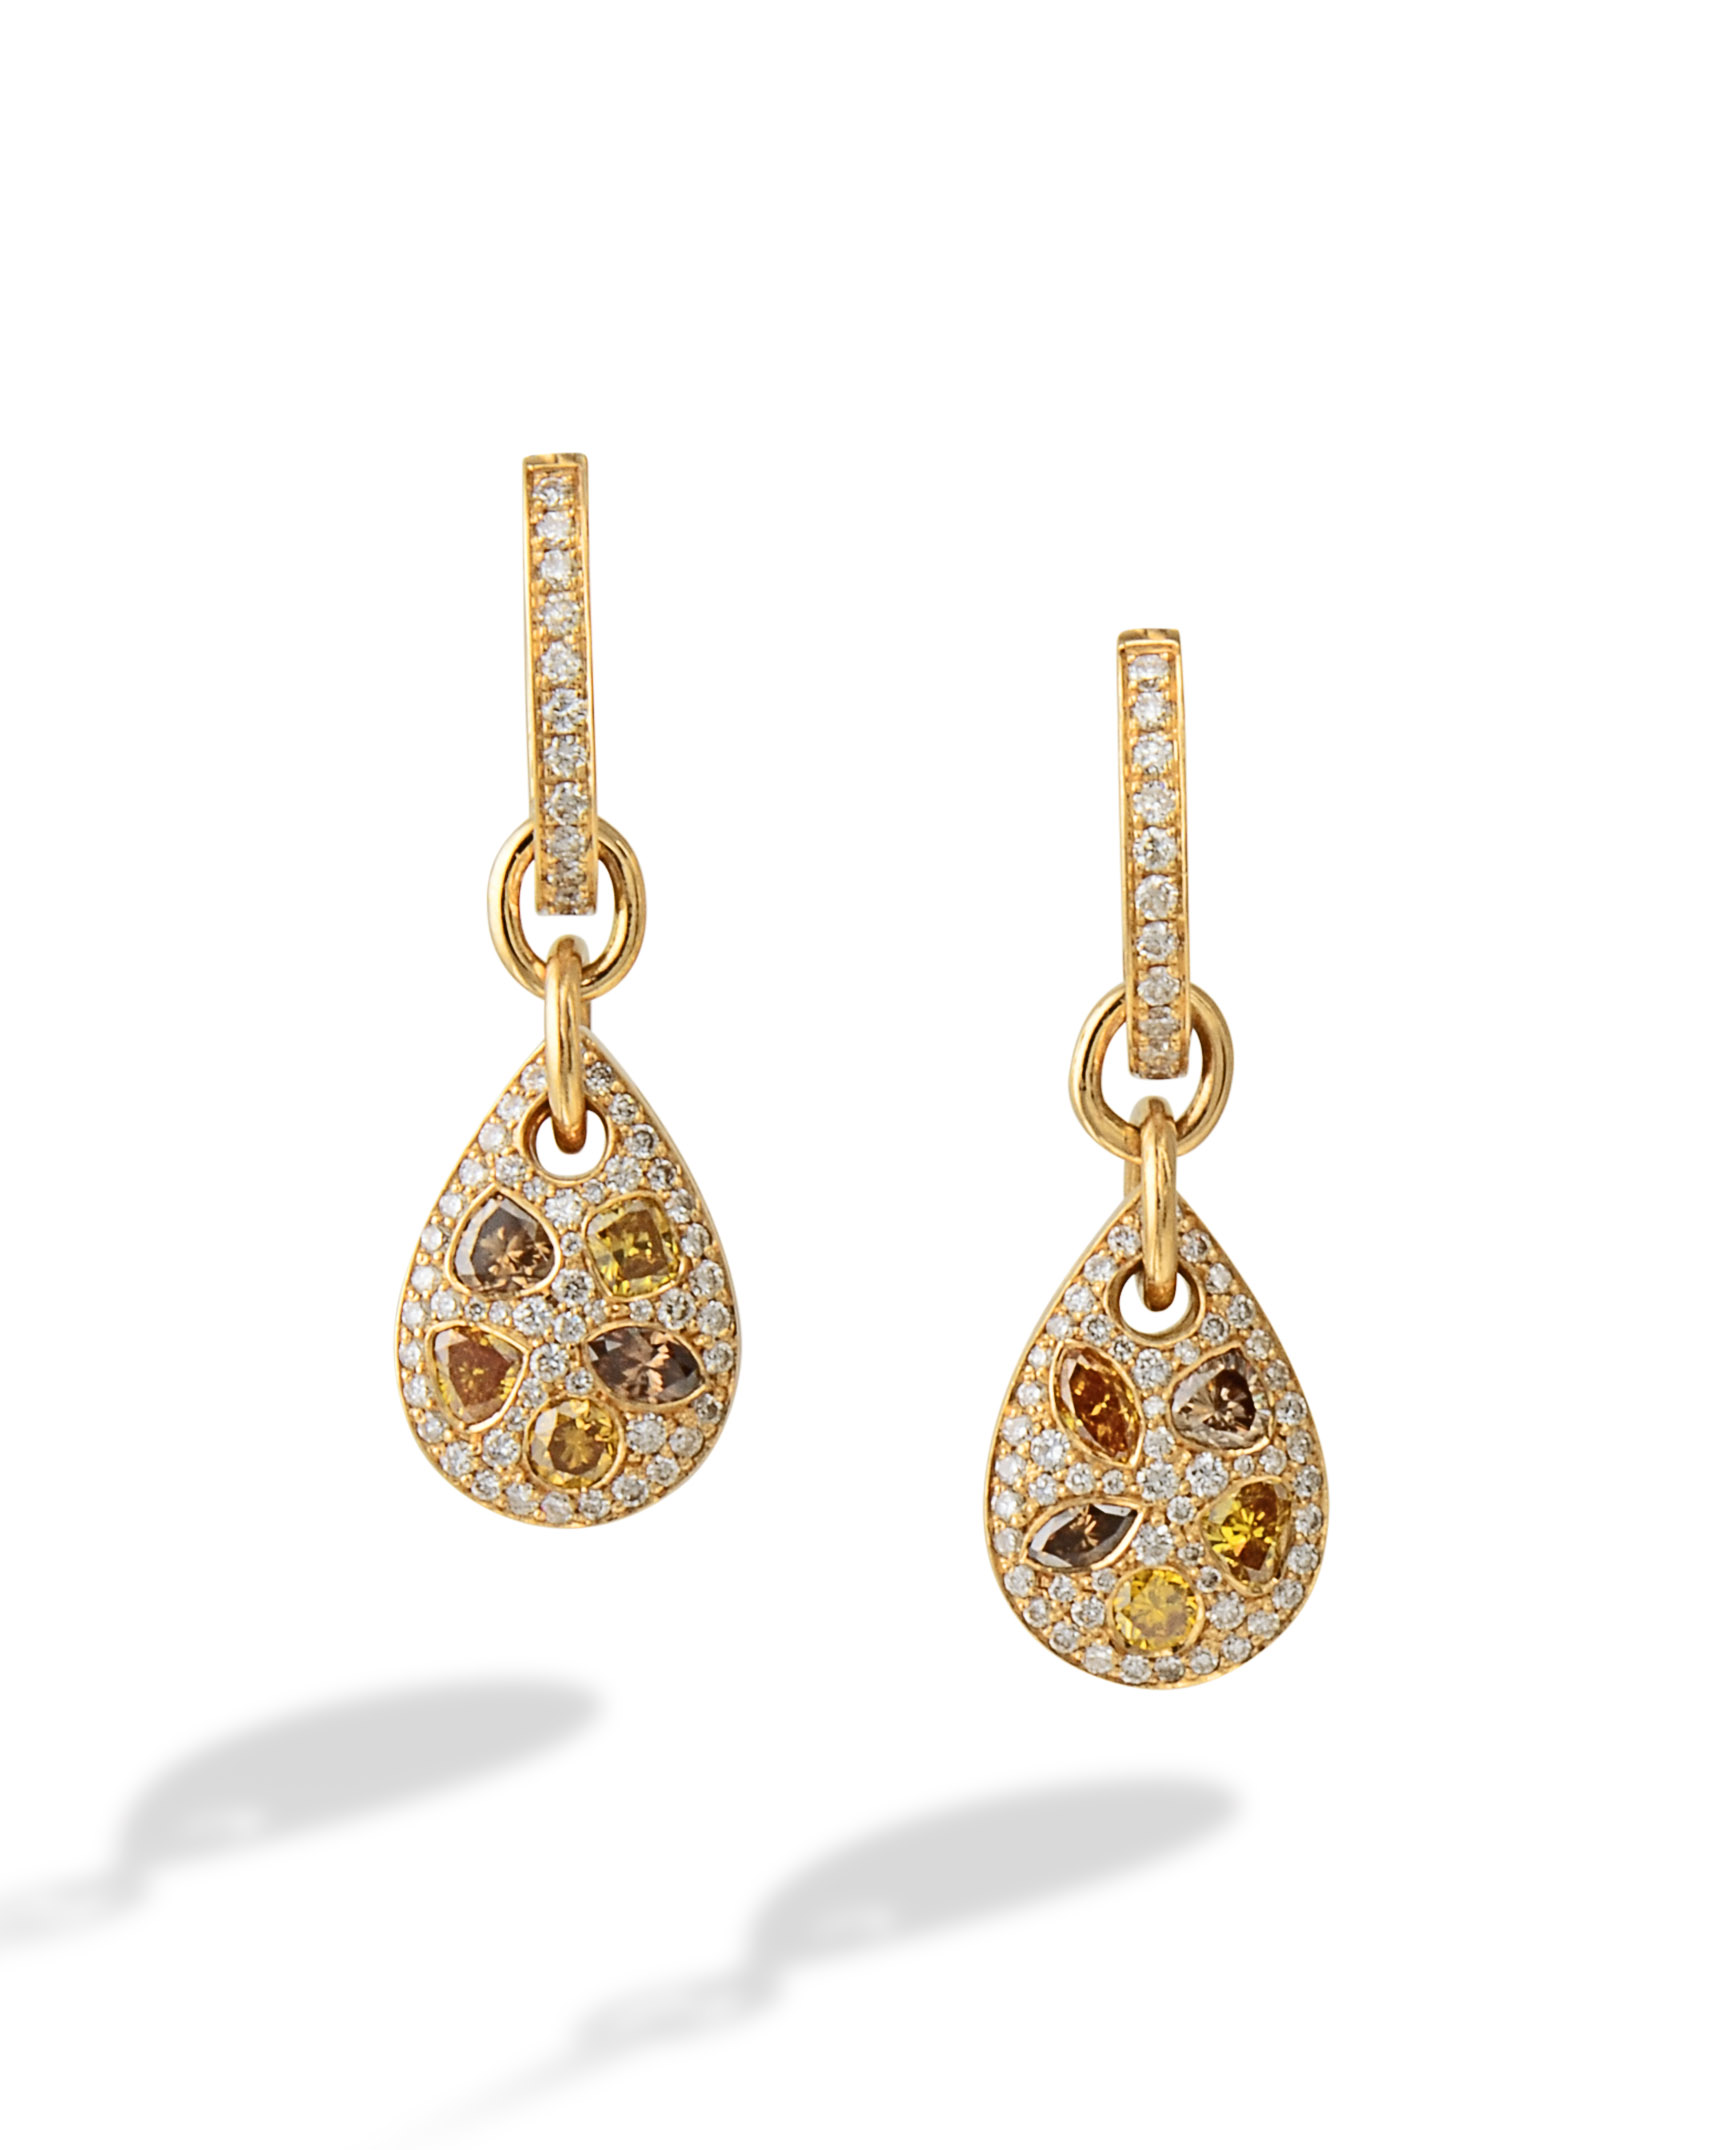 Shop Gold Earrings for Women - Ebullient Fancy Drops Gold Earrings | GRT  Jewels